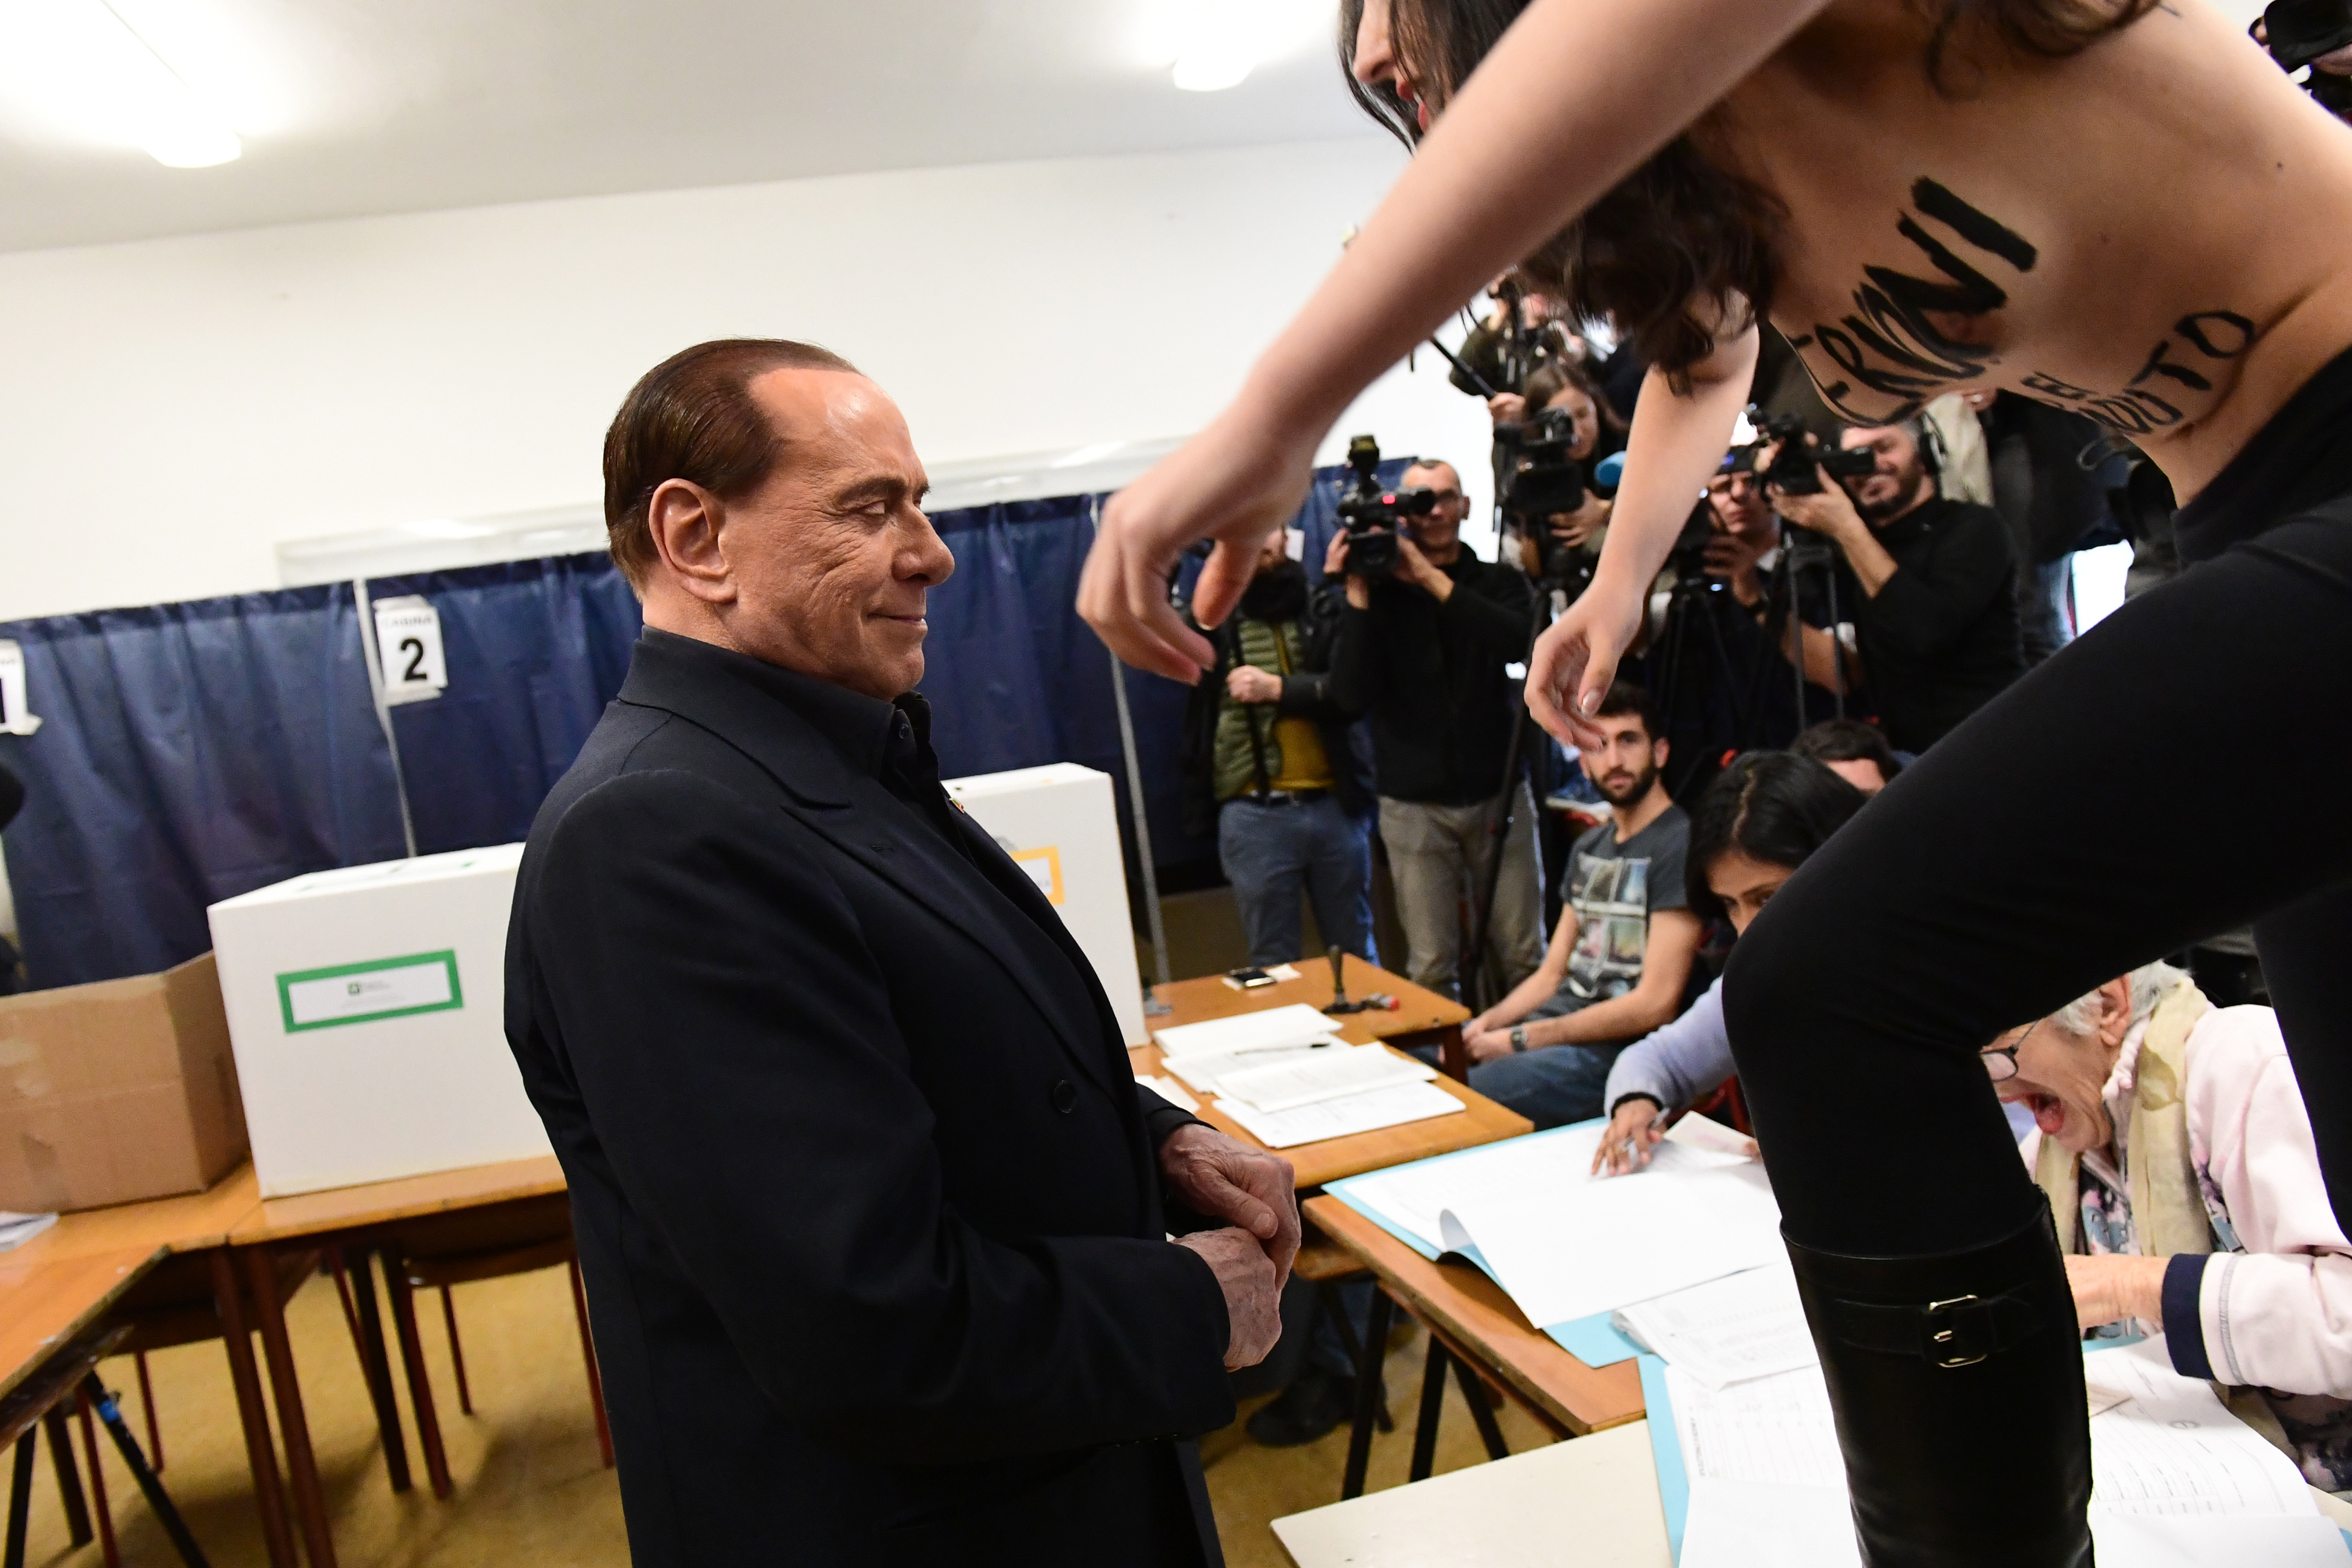 Félmeztelen aktivista rohanta le Berlusconit, aki gyorsan menekülőre fogta